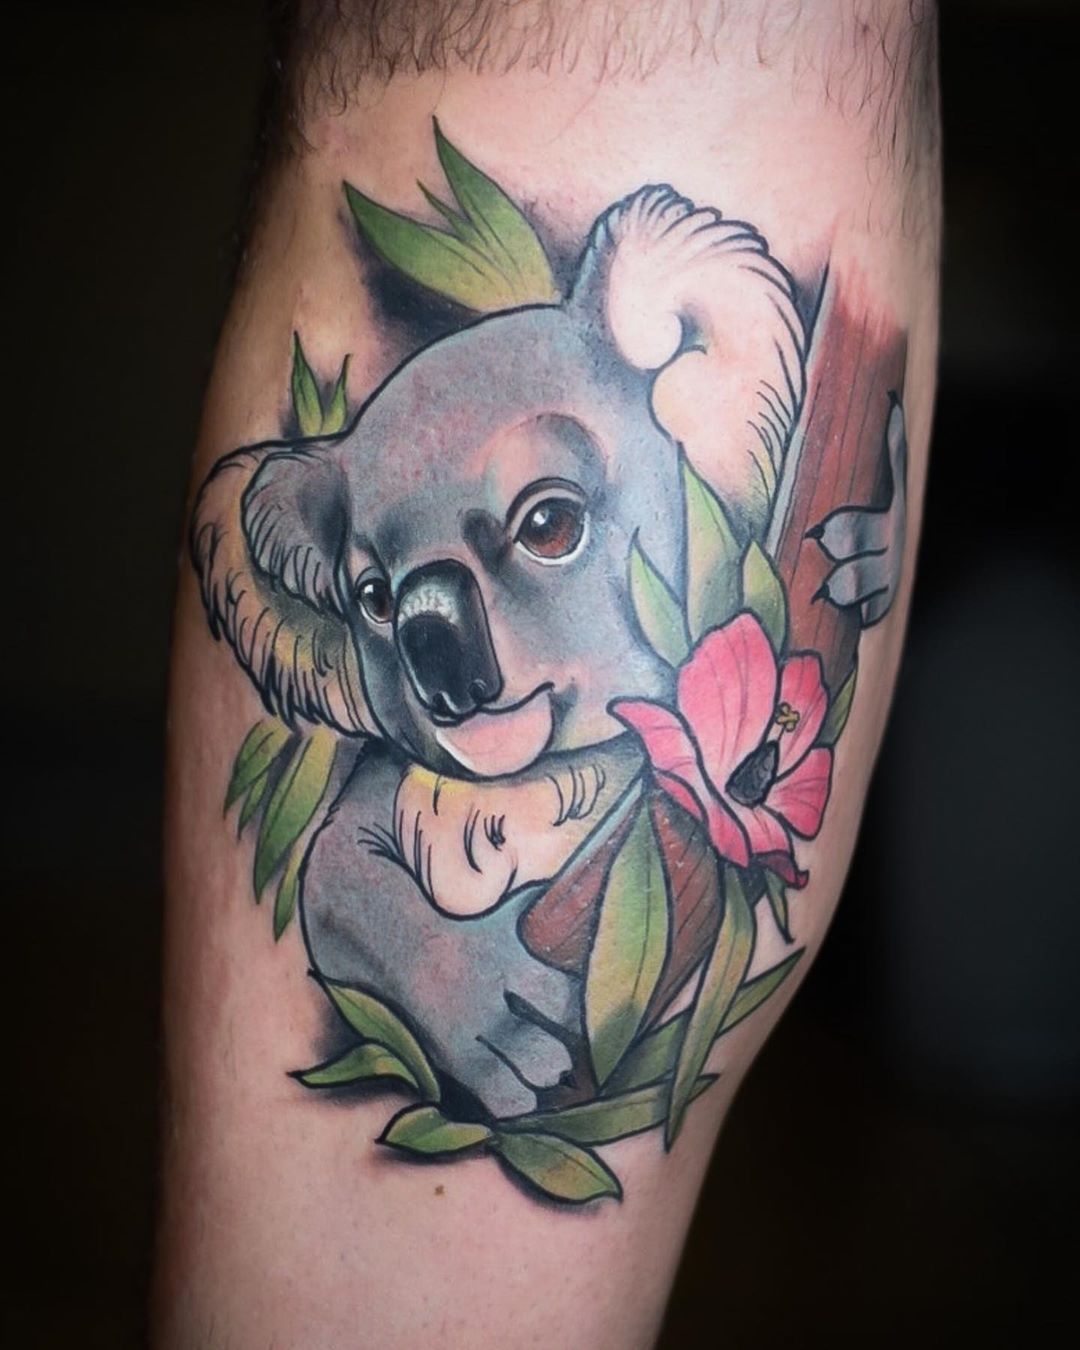 Buy 9 Koala Tattoos  Temporary Tattoos  Temporary Tattoo  Online in  India  Etsy